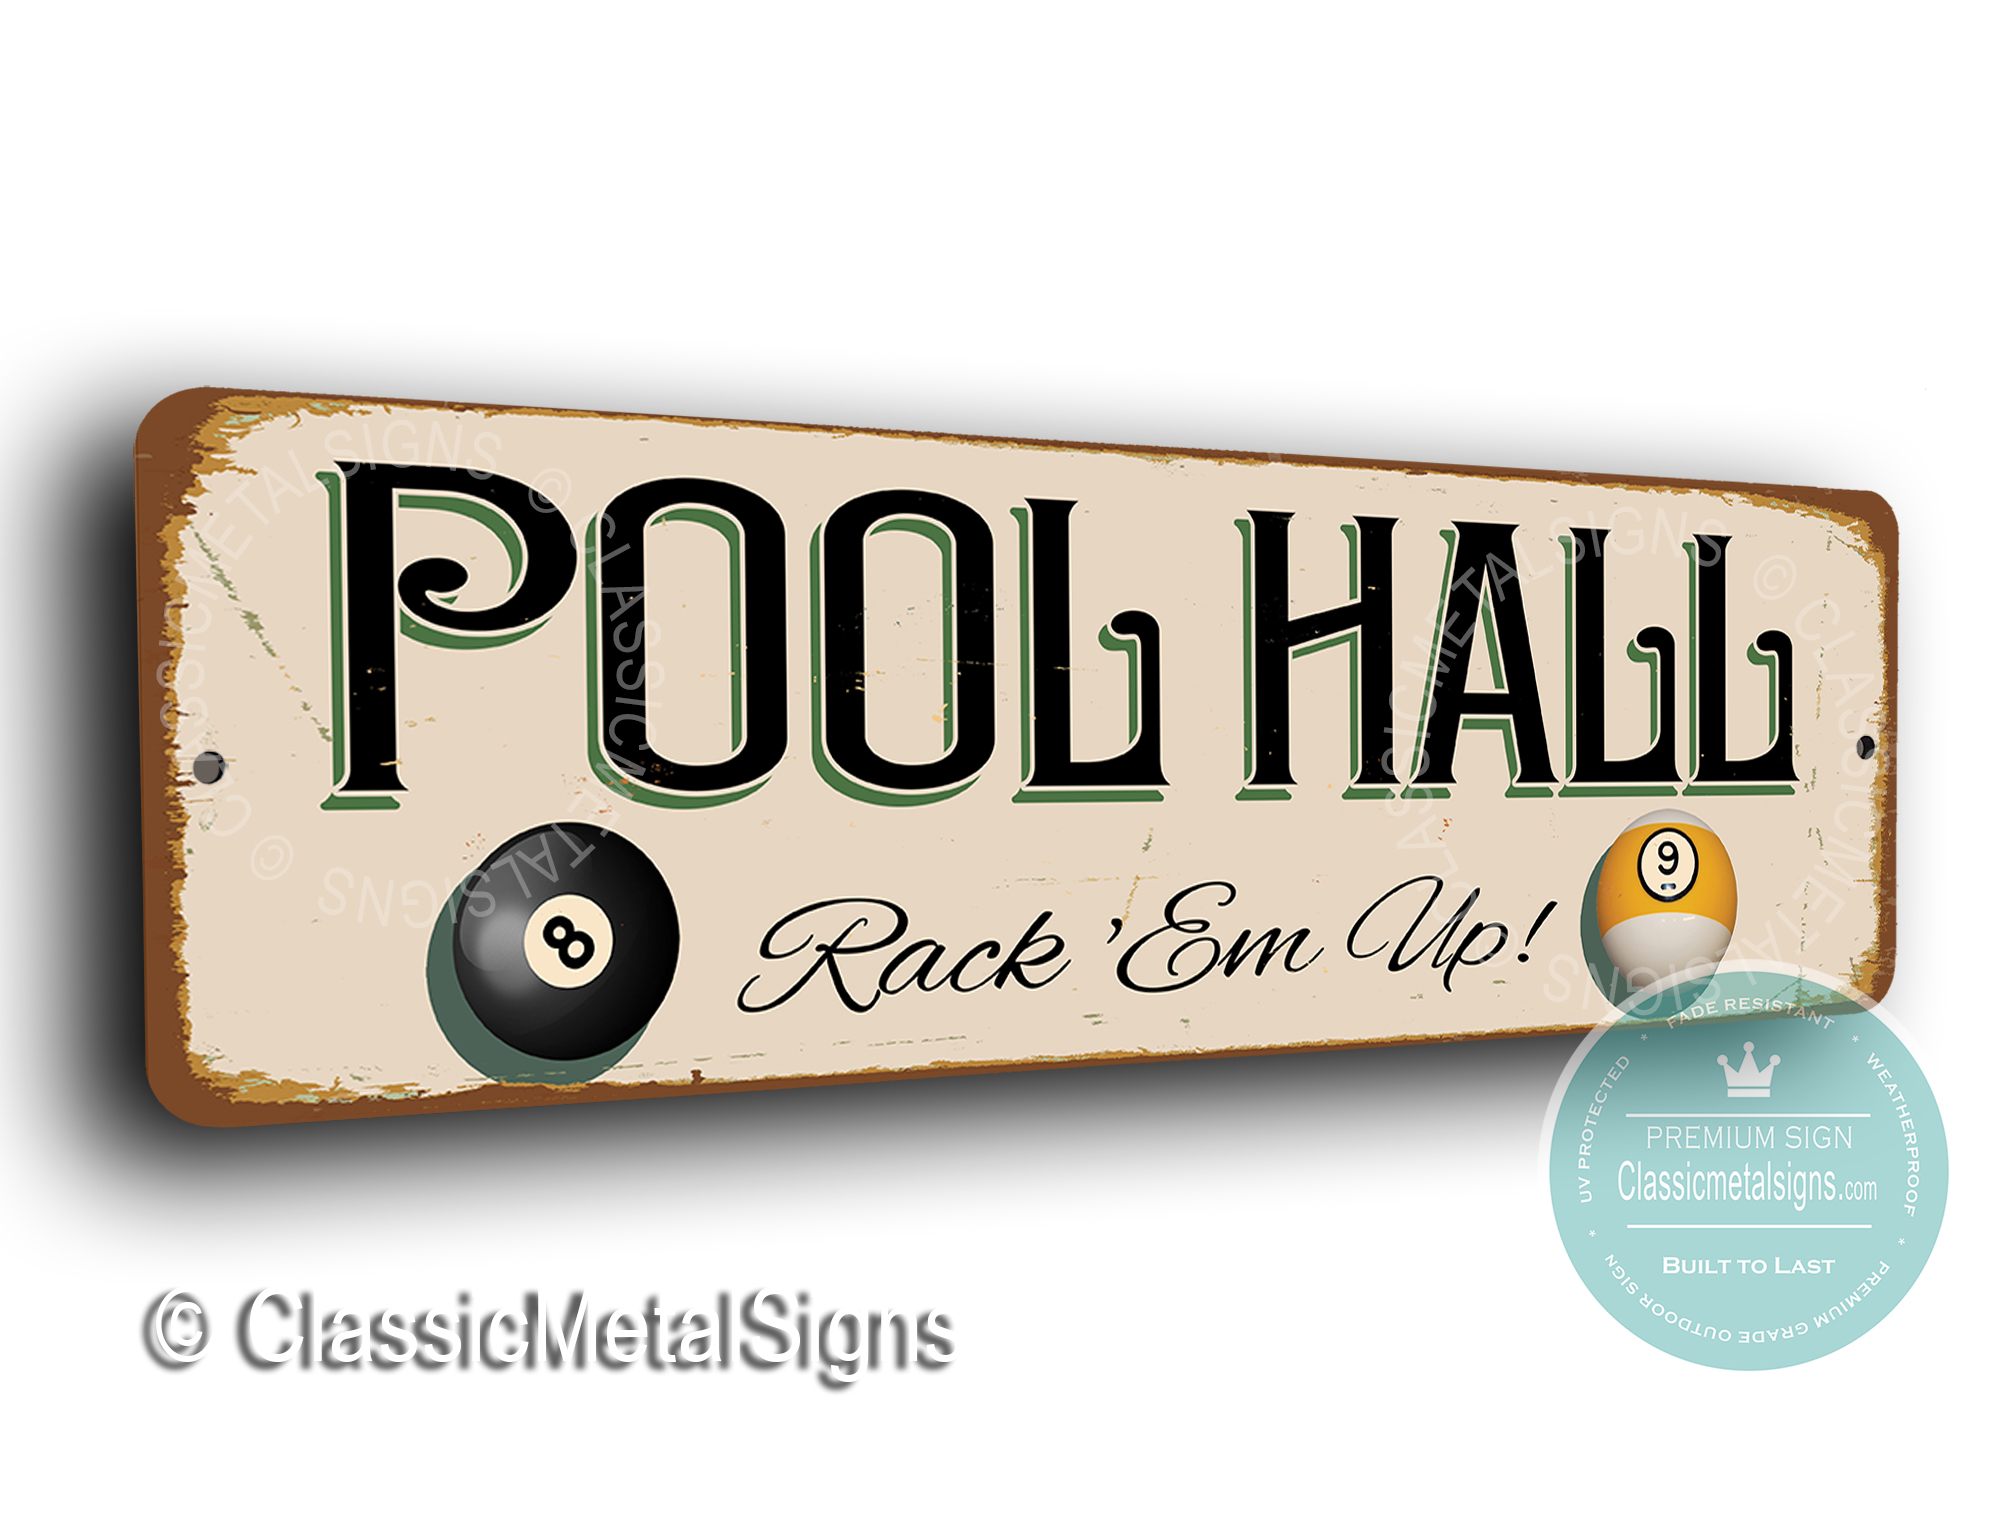 Pool Hall Sign